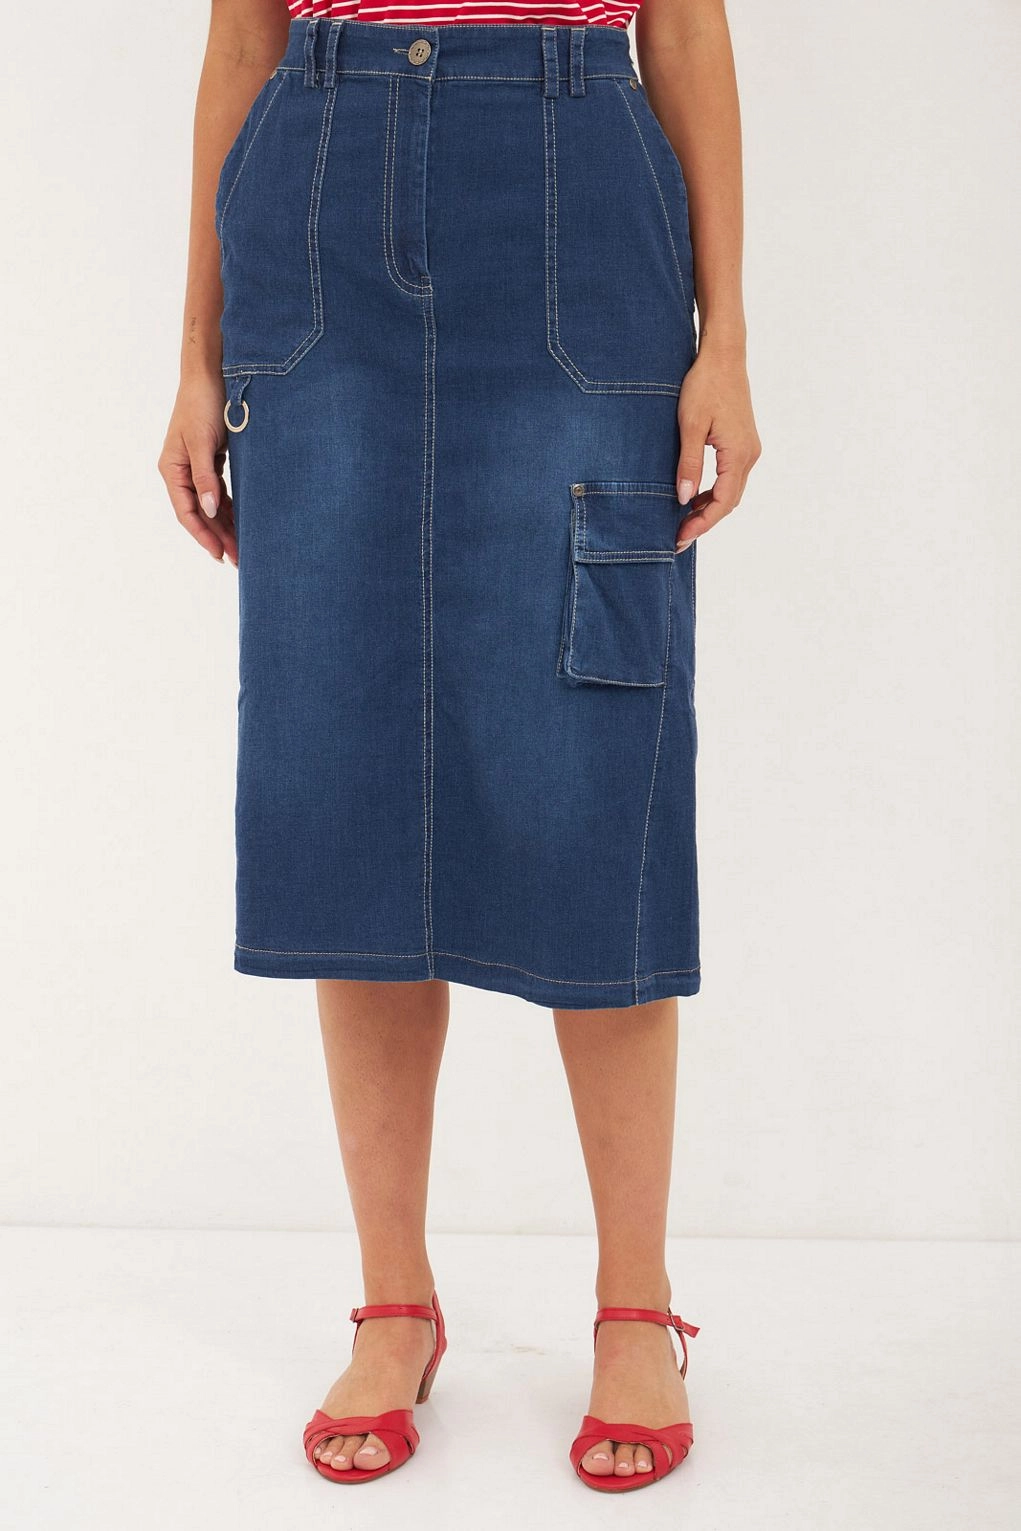 חצאית תות ג'ינס כחול